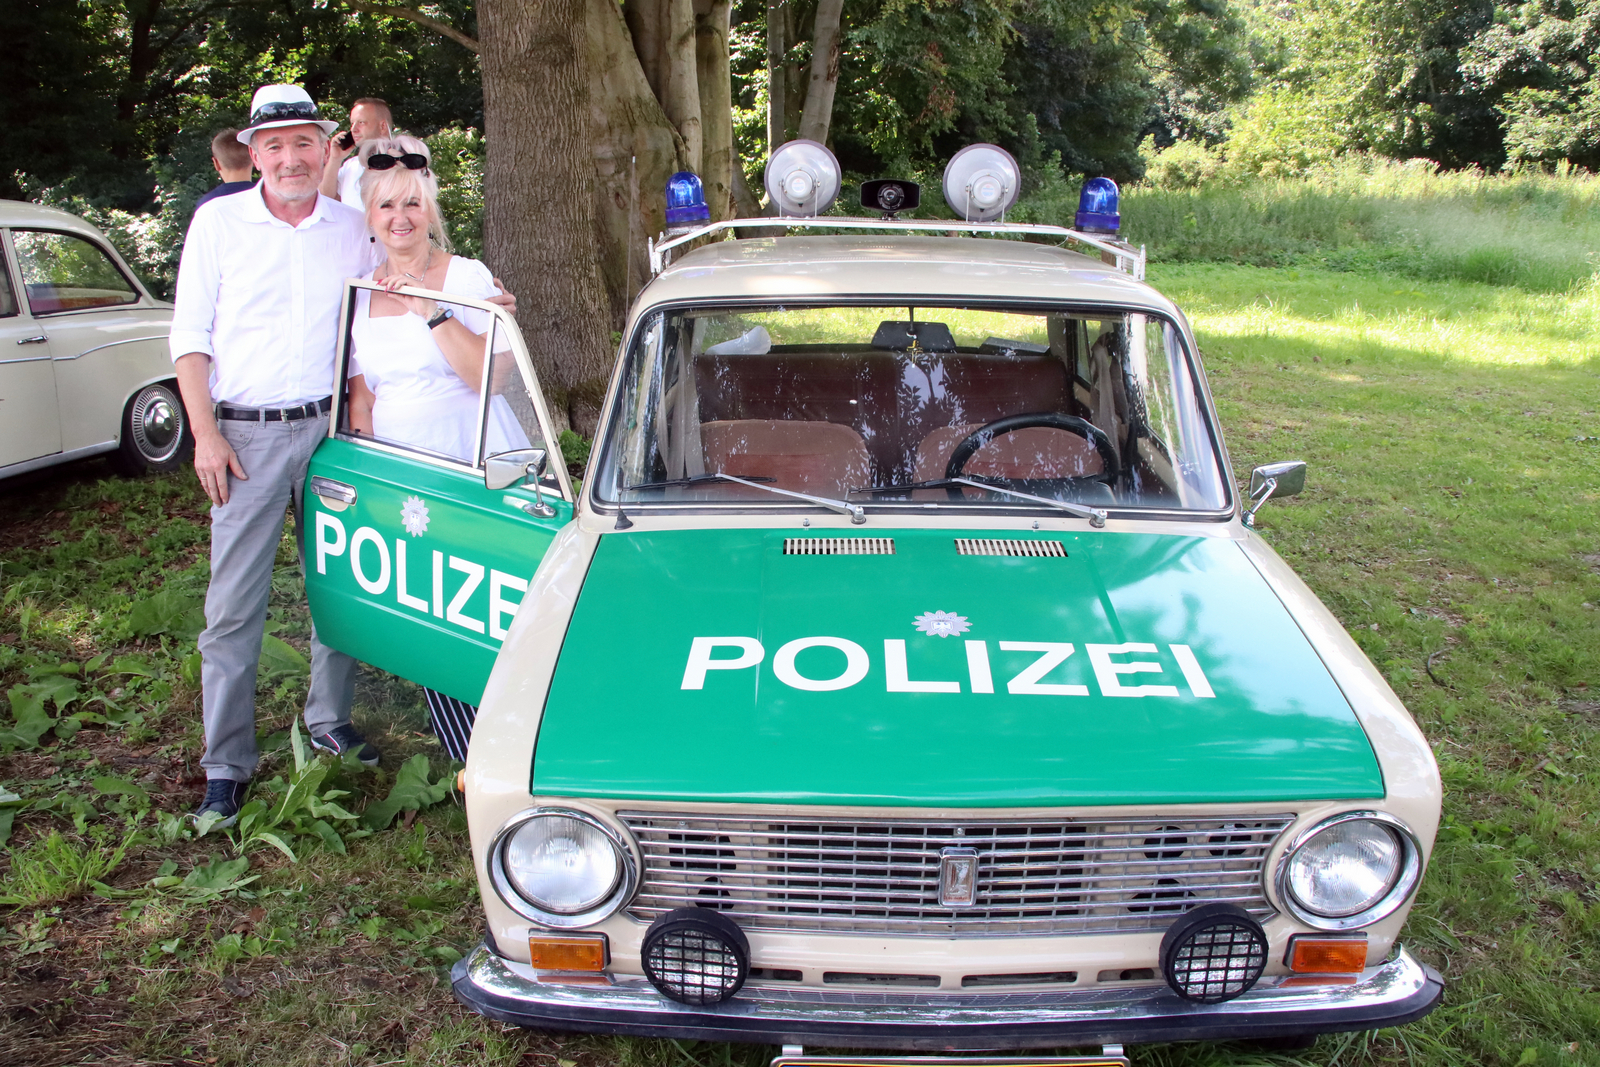 Raciborzanie, Zdzisław i Mariola, tym razem zaprezentowali w Sławikowie ładę 2101 z 1983 roku. Zdzisław wcześniej na dwóch poprzednich zlotach prezentował swoje motocykle. Na ładzie widniał napis Polizei, a na dachu umieszczone były koguty – jak wyjaśniał nam Zdzisław, był to jego pomysł na ten pojazd, inspirowany rzeczywistymi policyjnymi autami. Mariola, żona Zdzisława, podkreśliła, że Zdzisław jest fanem motoryzacji od zawsze. - Łada robi wrażenie, ludzie przychodzą, oglądają, i to nas bardzo cieszy - powiedzieli nam małżonkowie.